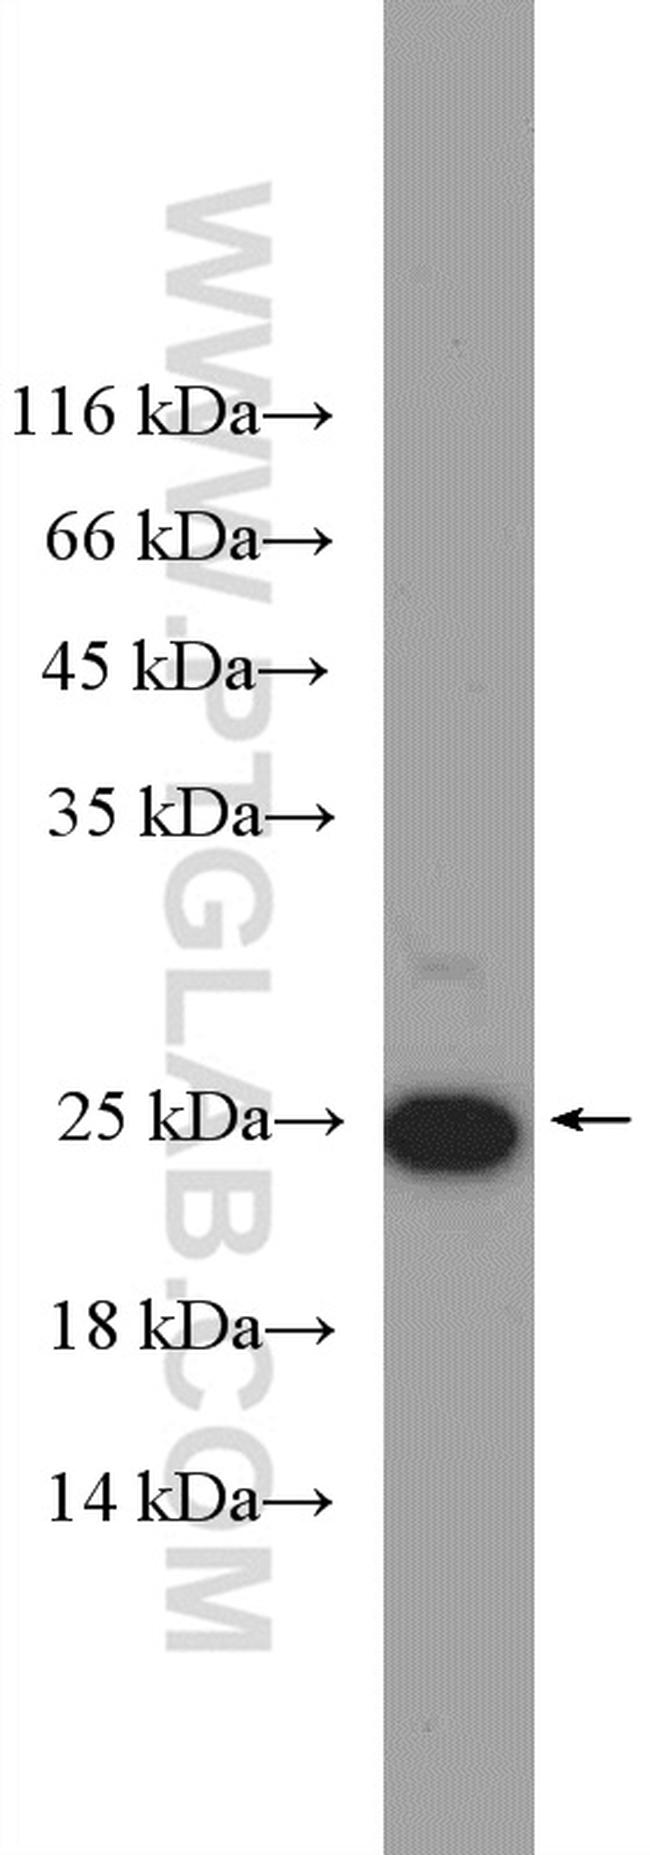 HMGB3 Antibody in Western Blot (WB)